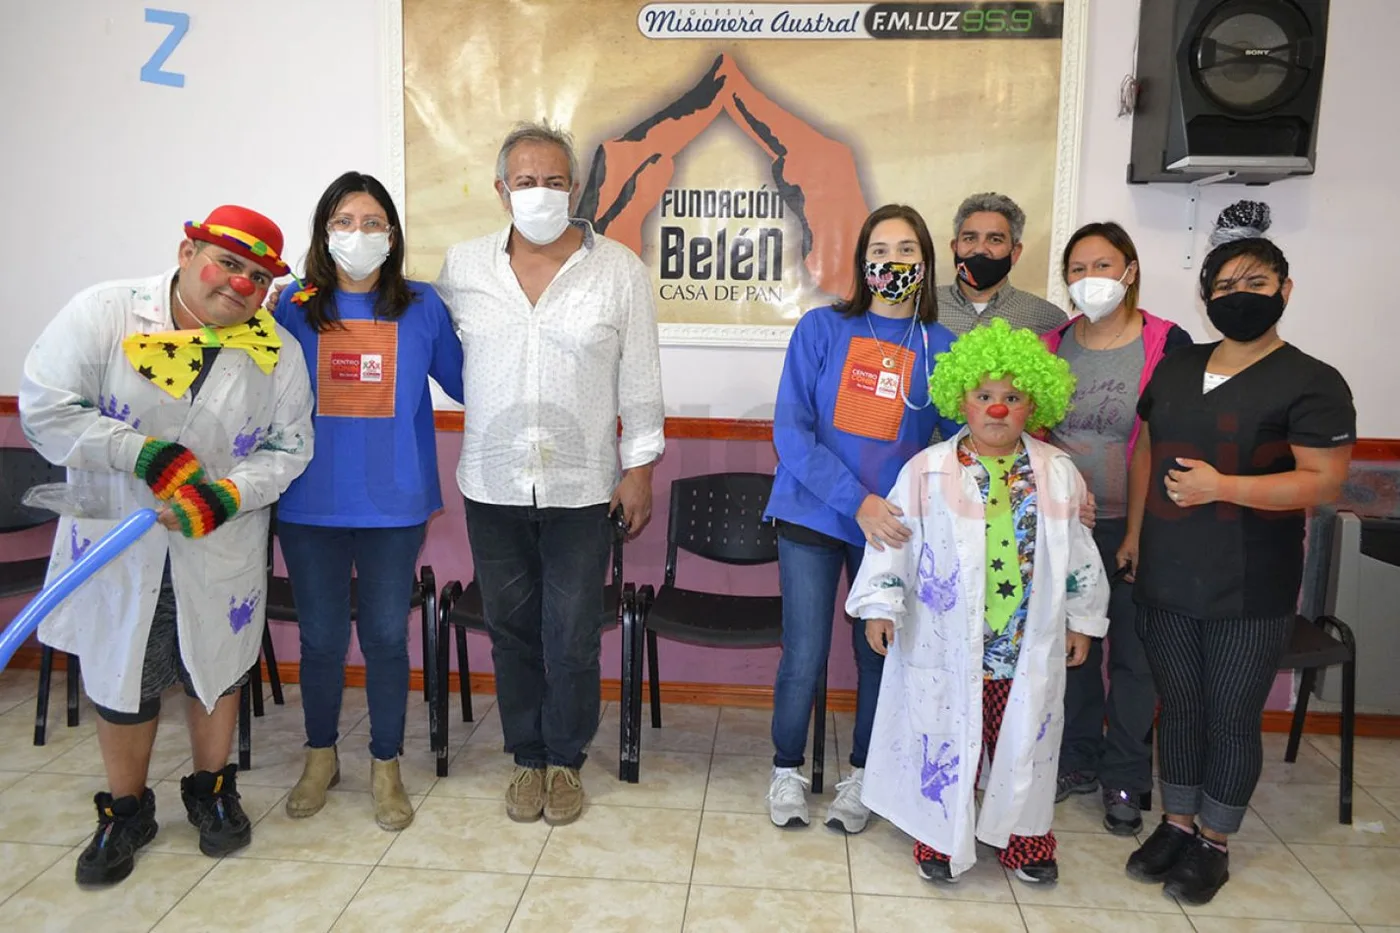 Los integrantes de la Fundación DAR Conin junto al responsable de la Fundación Belén y los voluntarios los payasos “Paleta” y “Porotín” y la peluquera